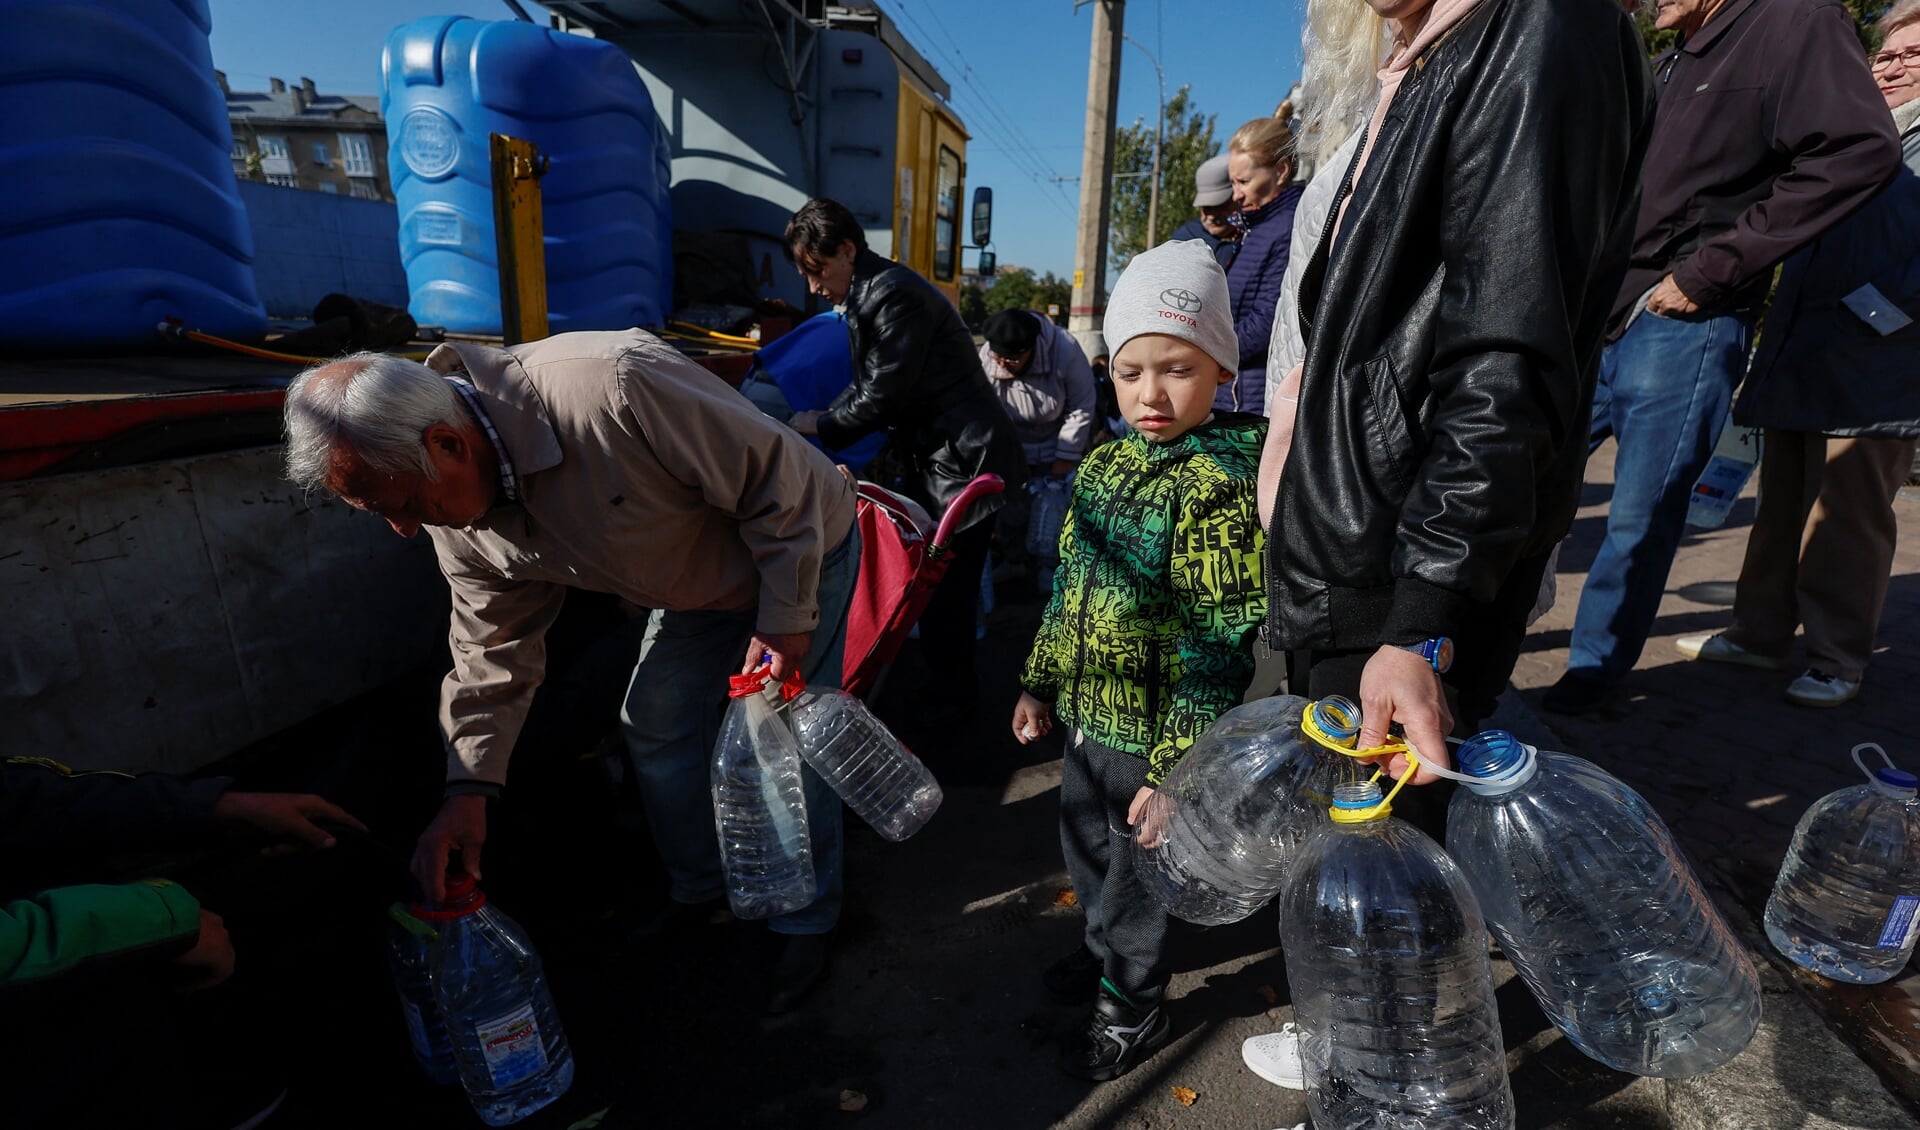 Inwoners van Mykolajiv in de regio Cherson vullen maandag flessen met schoon drinkwater omdat de watertoevoer door de Russen is beschadigd.